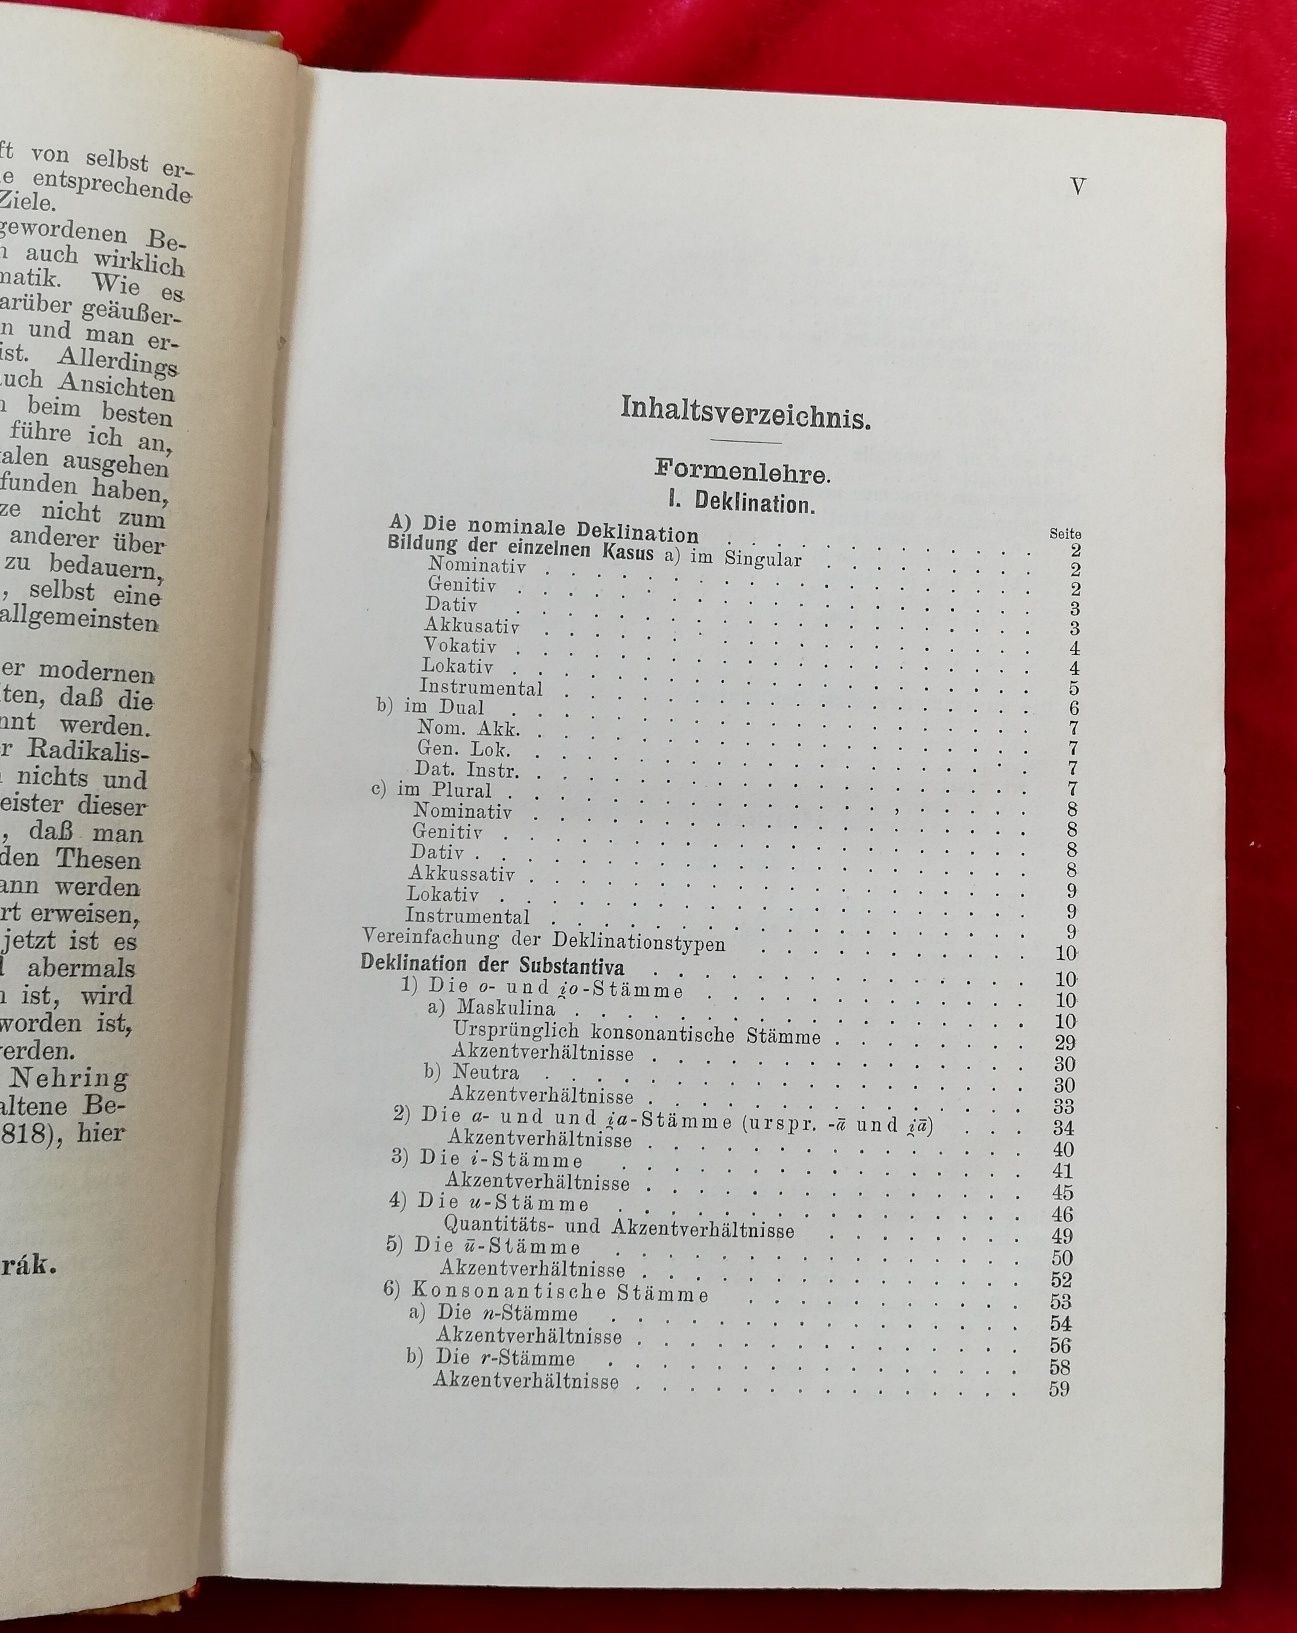 W Vondrak Gramatica comparată slava 1908 vol 2 în lb germana